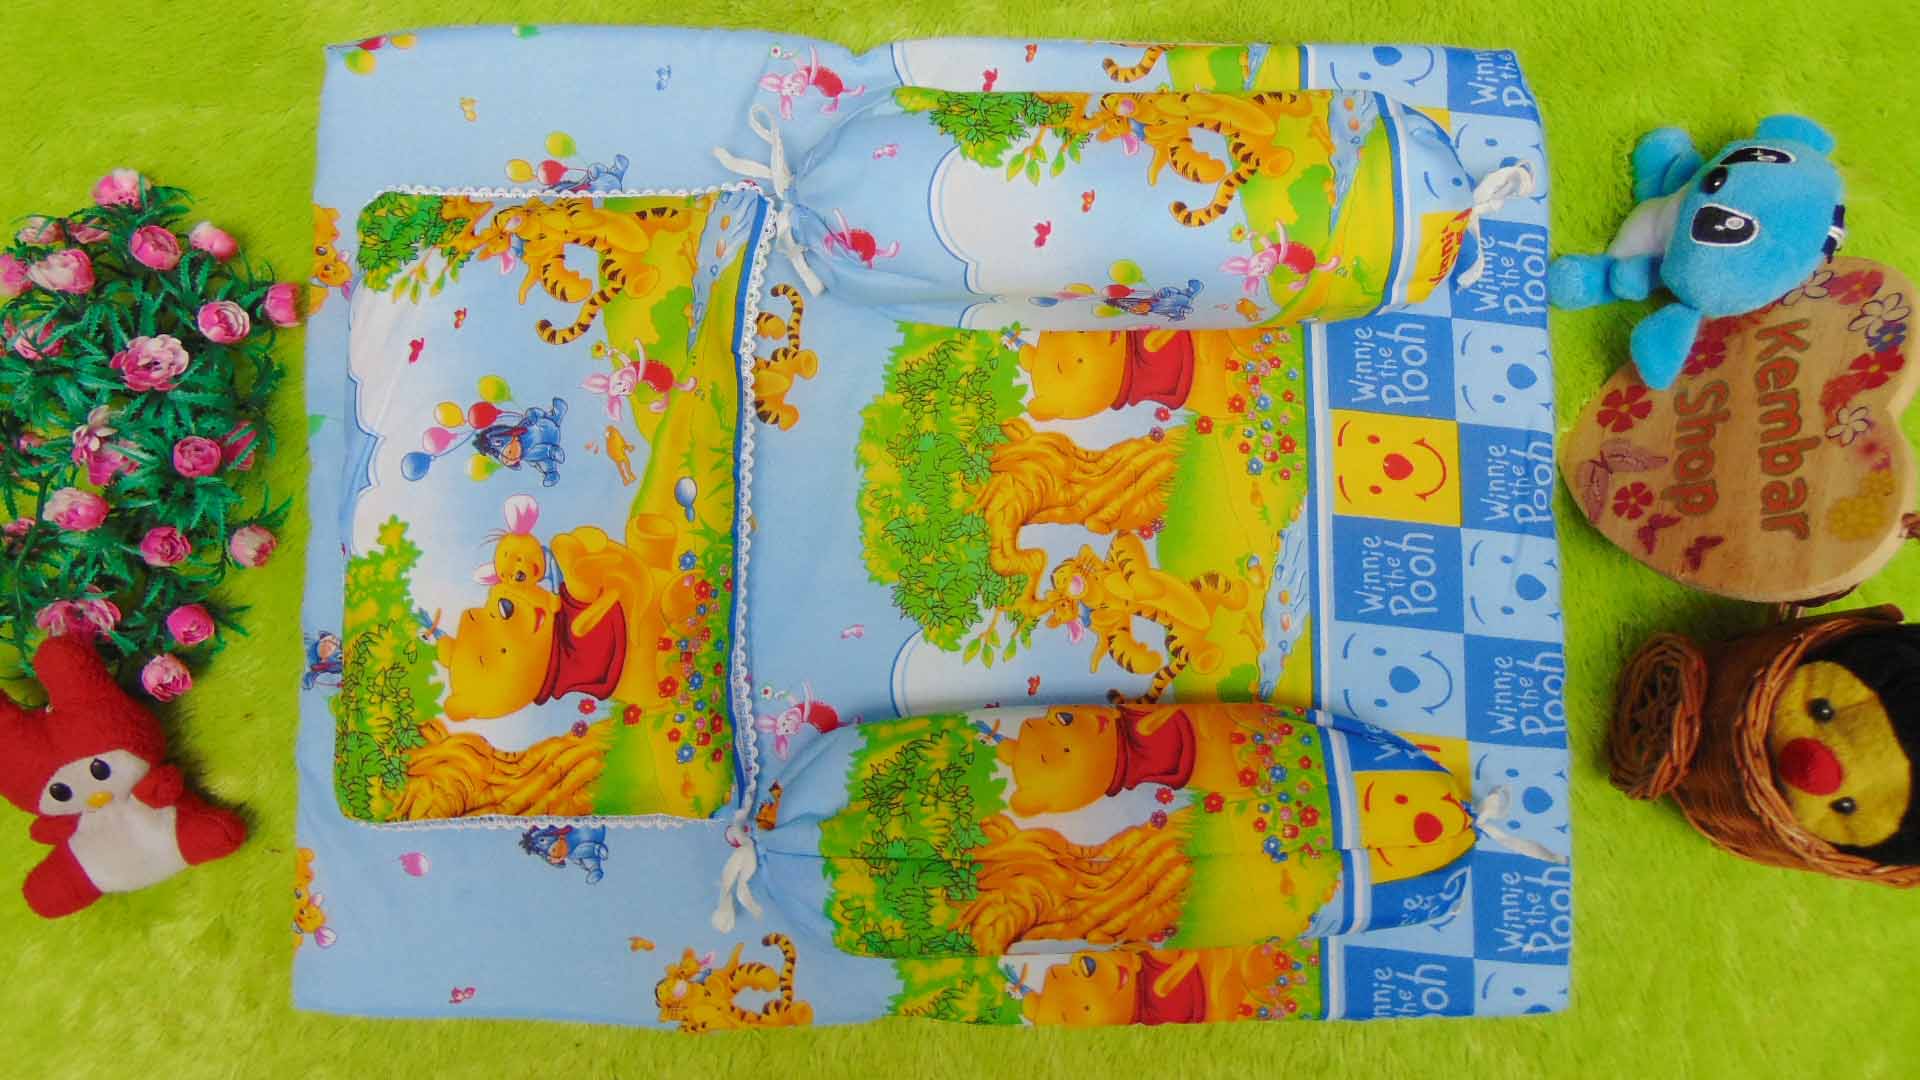 PALING MURAH kado bayi set kasur bayi karakter Winnie The Pooh plus bantal dan guling Biru